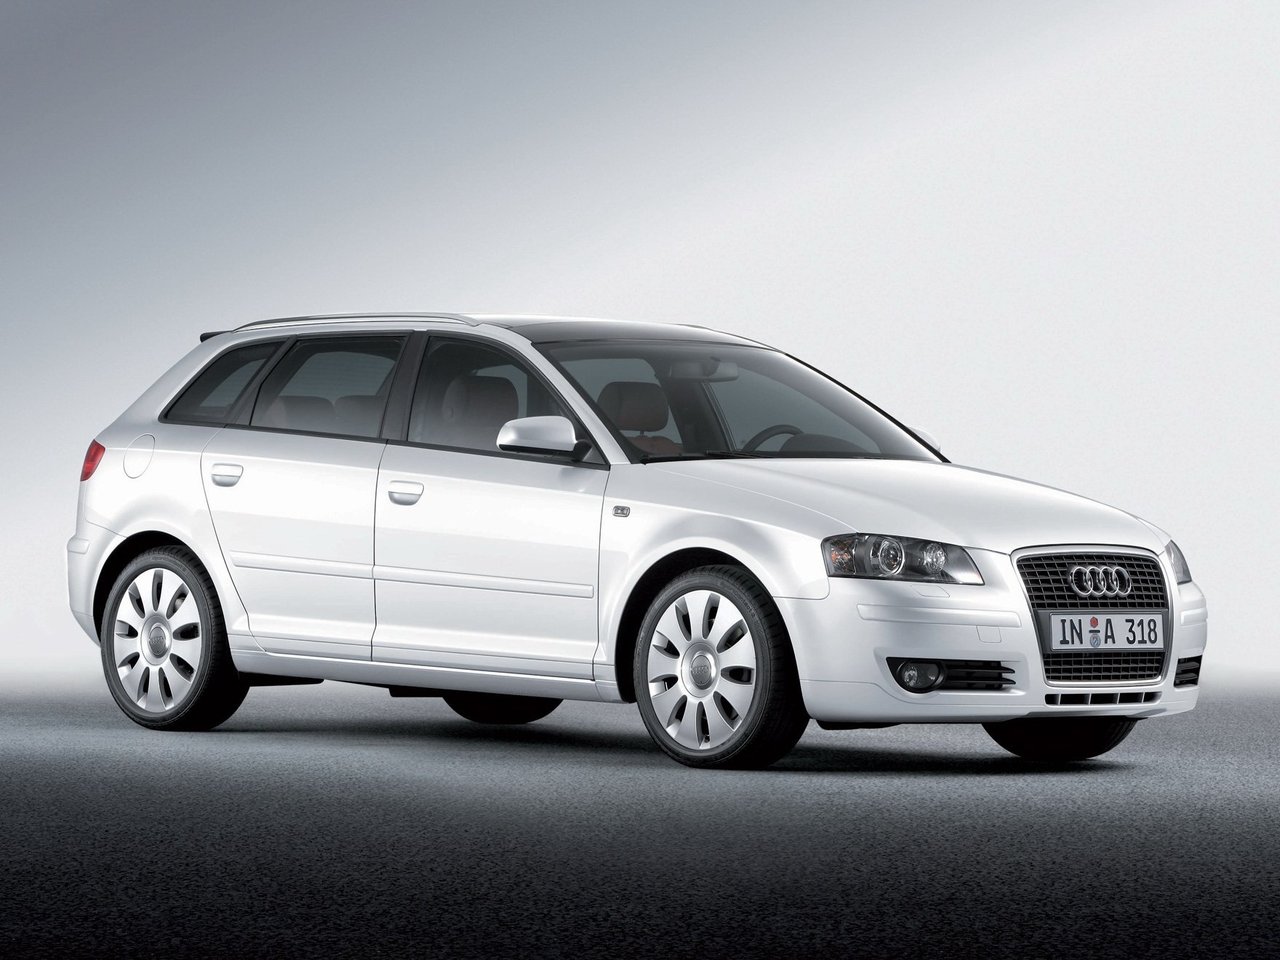 Расход газа двенадцати комплектаций хэтчбека пять дверей Sportback Audi A3. Разница стоимости заправки газом и бензином. Автономный пробег до и после установки ГБО.